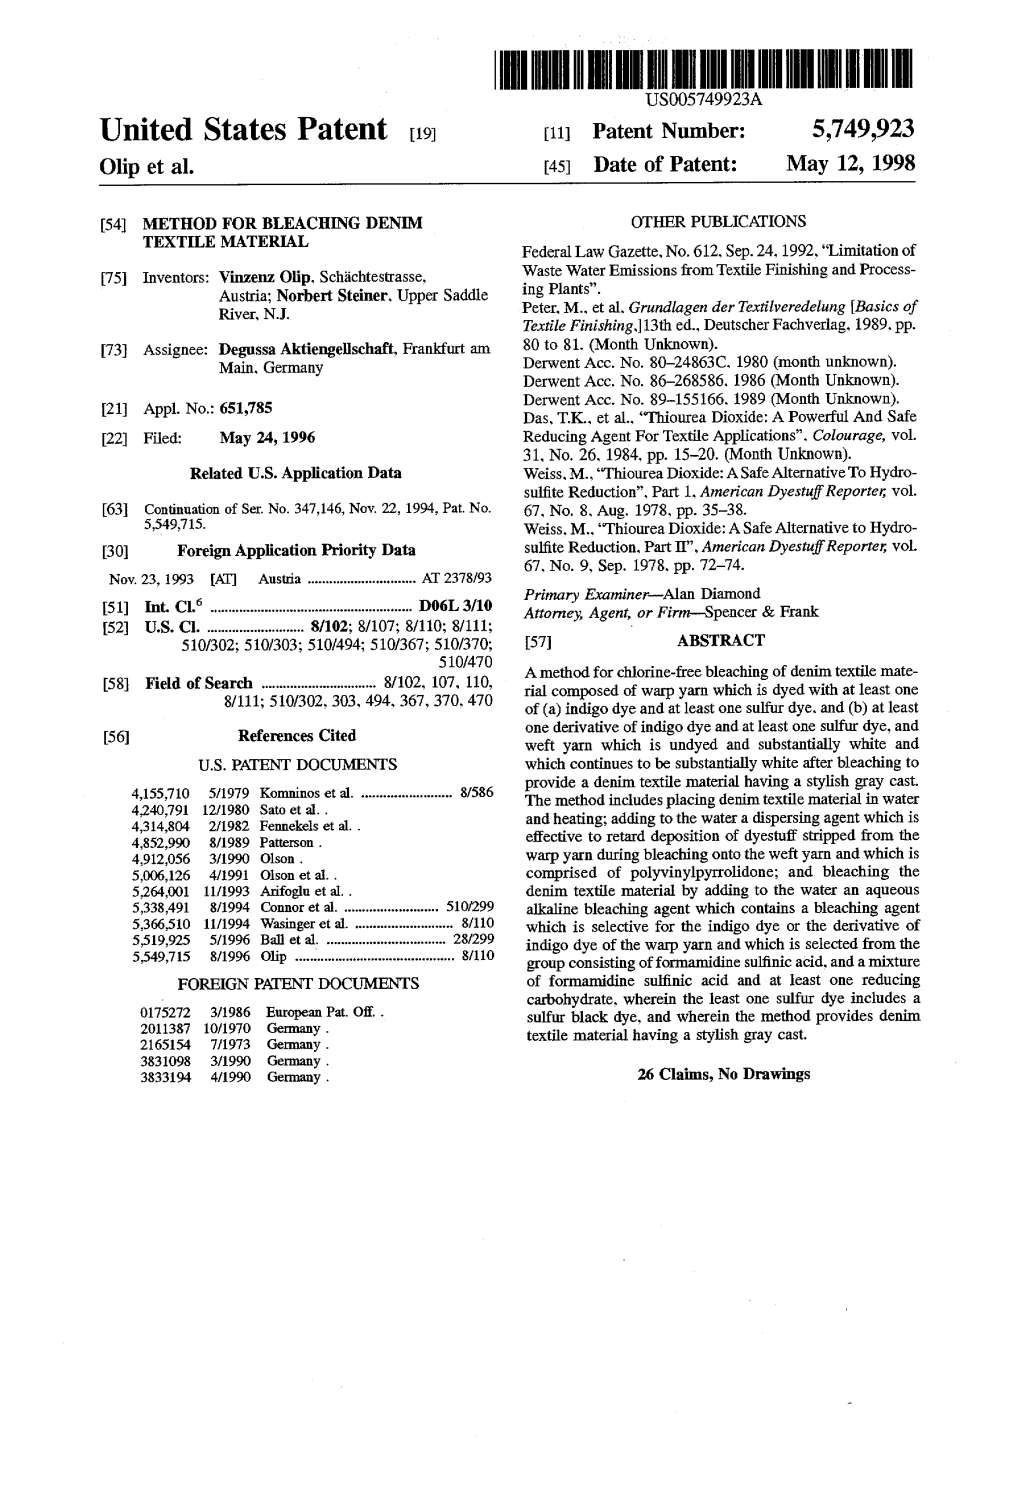 United States Patent 19 11 Patent Number: 5,749,923 Olip Et Al